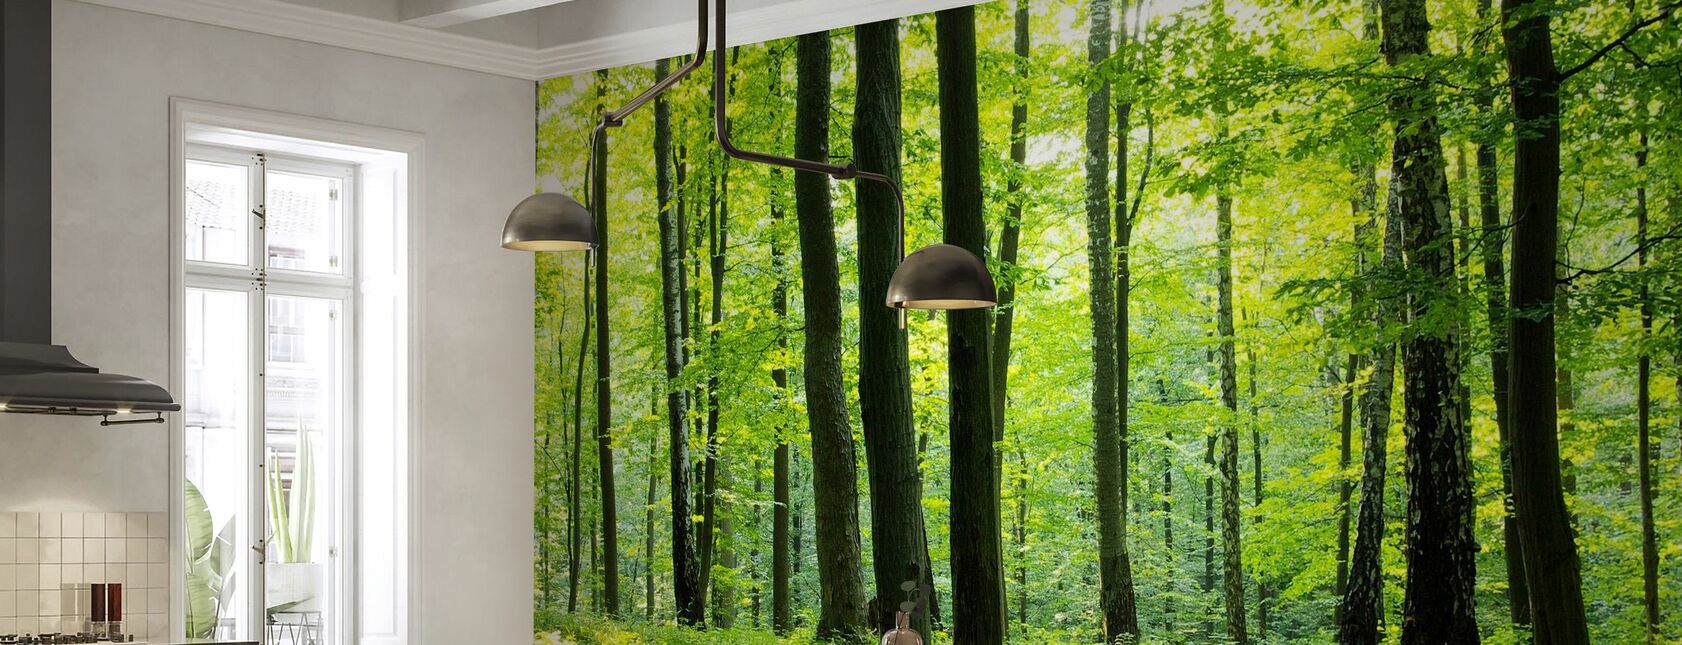 Rural Forest - Wallpaper - Kitchen